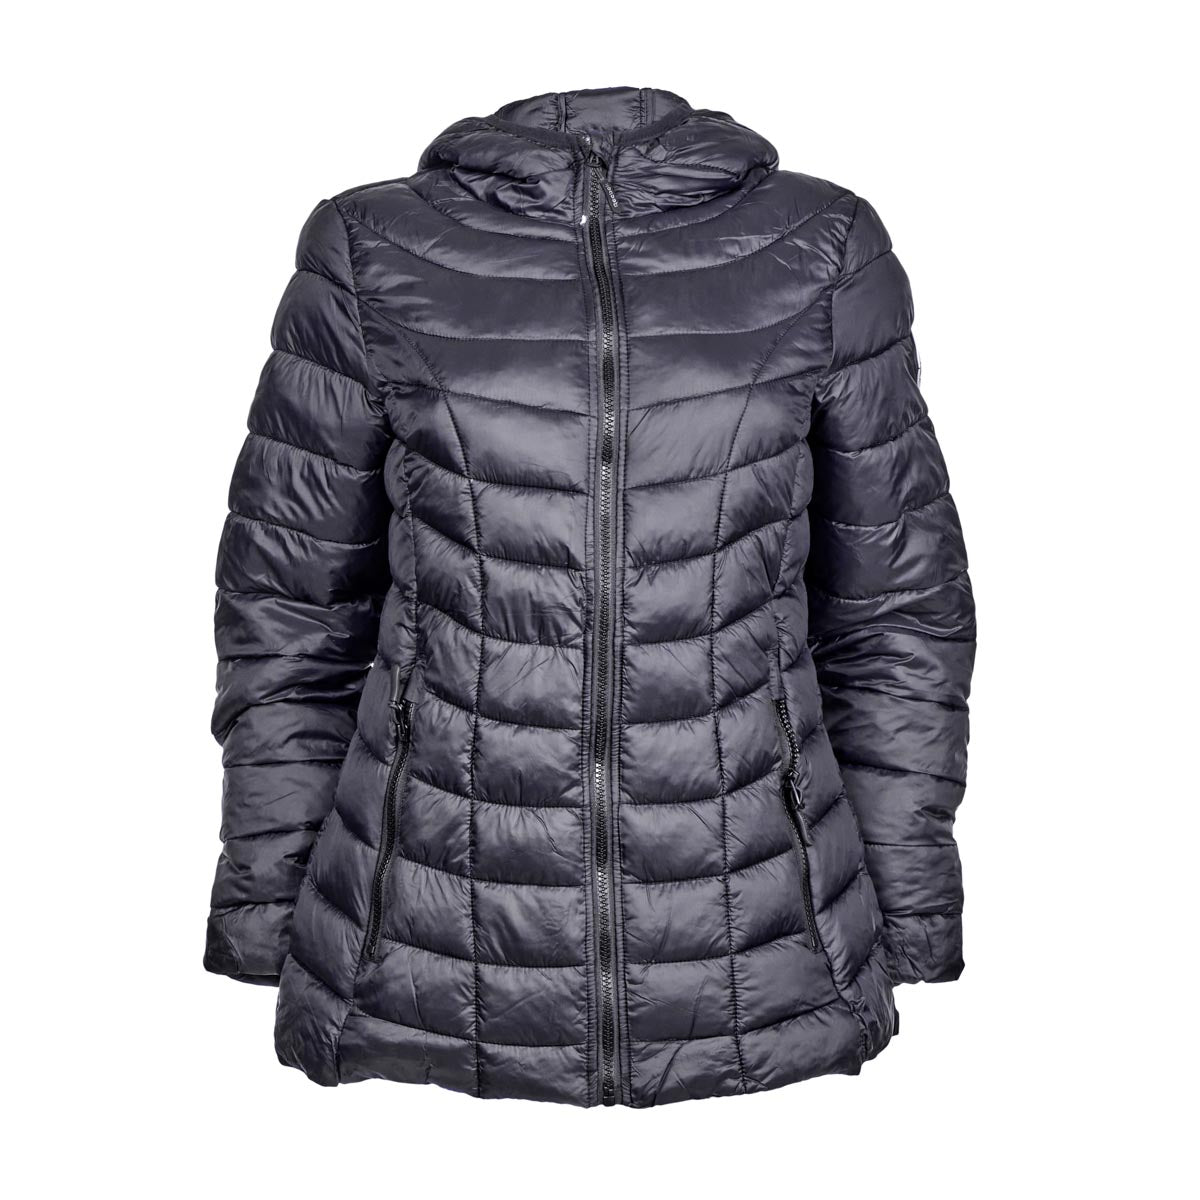 Reebok Women's Glacier Shield Jacket with Hood